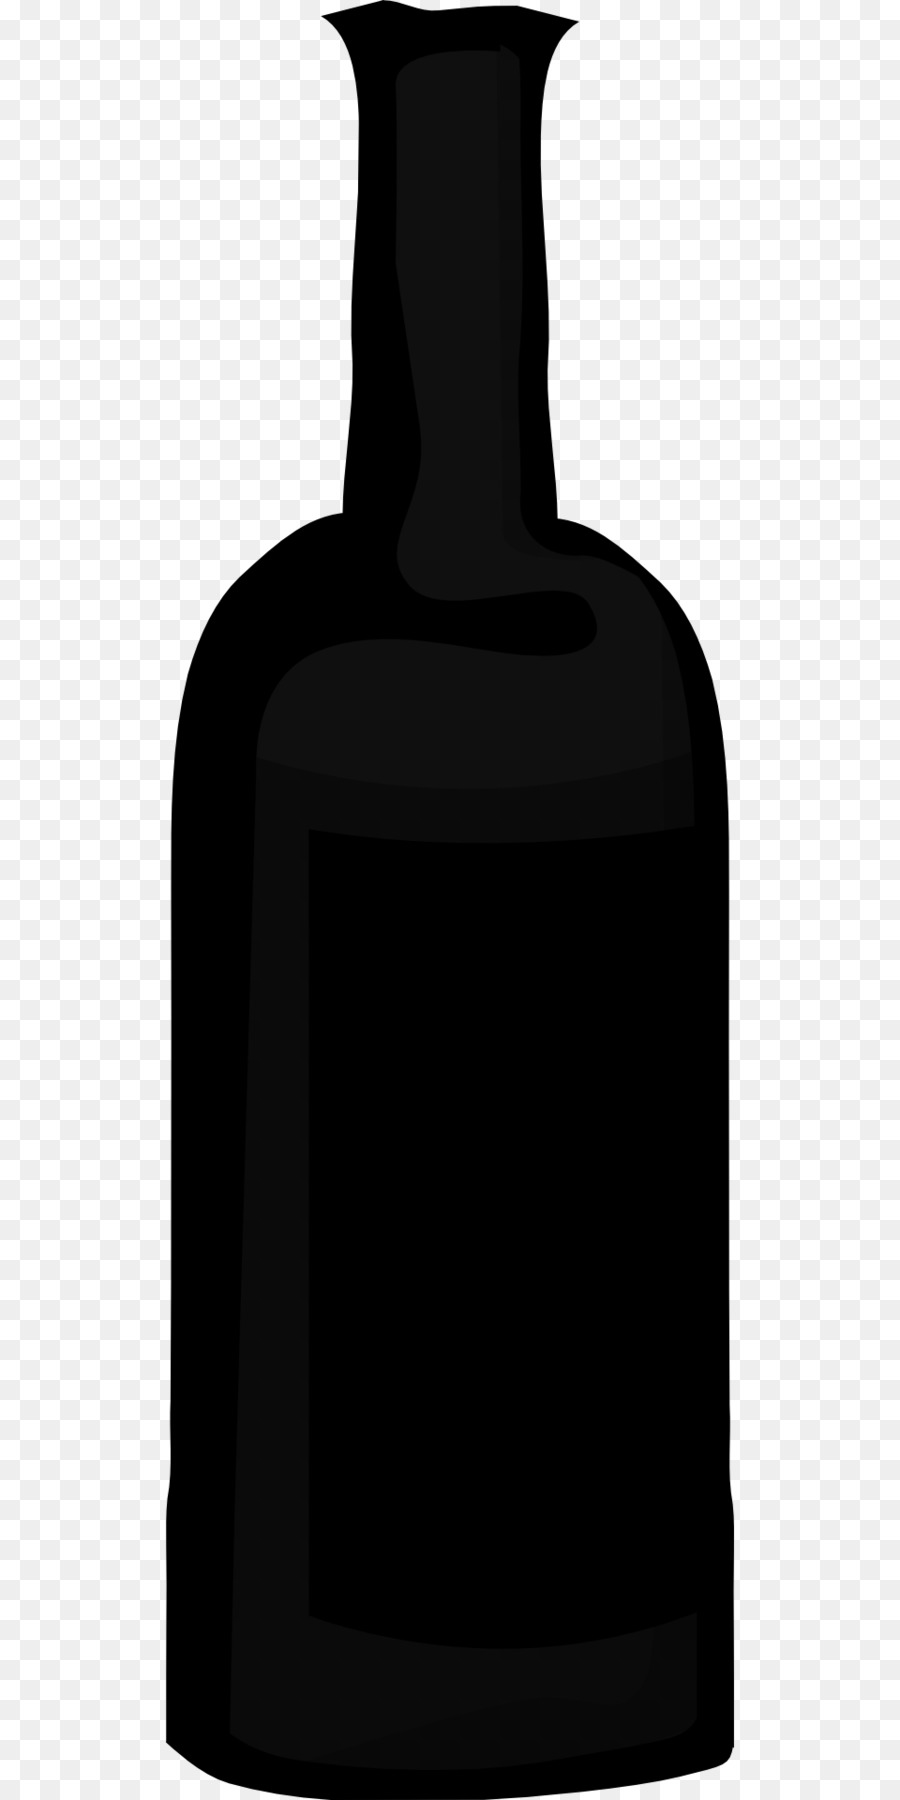 Wine Bottle Beer Alcoholic drink - bottle png download - 960*1920 - Free Transparent Wine png Download.